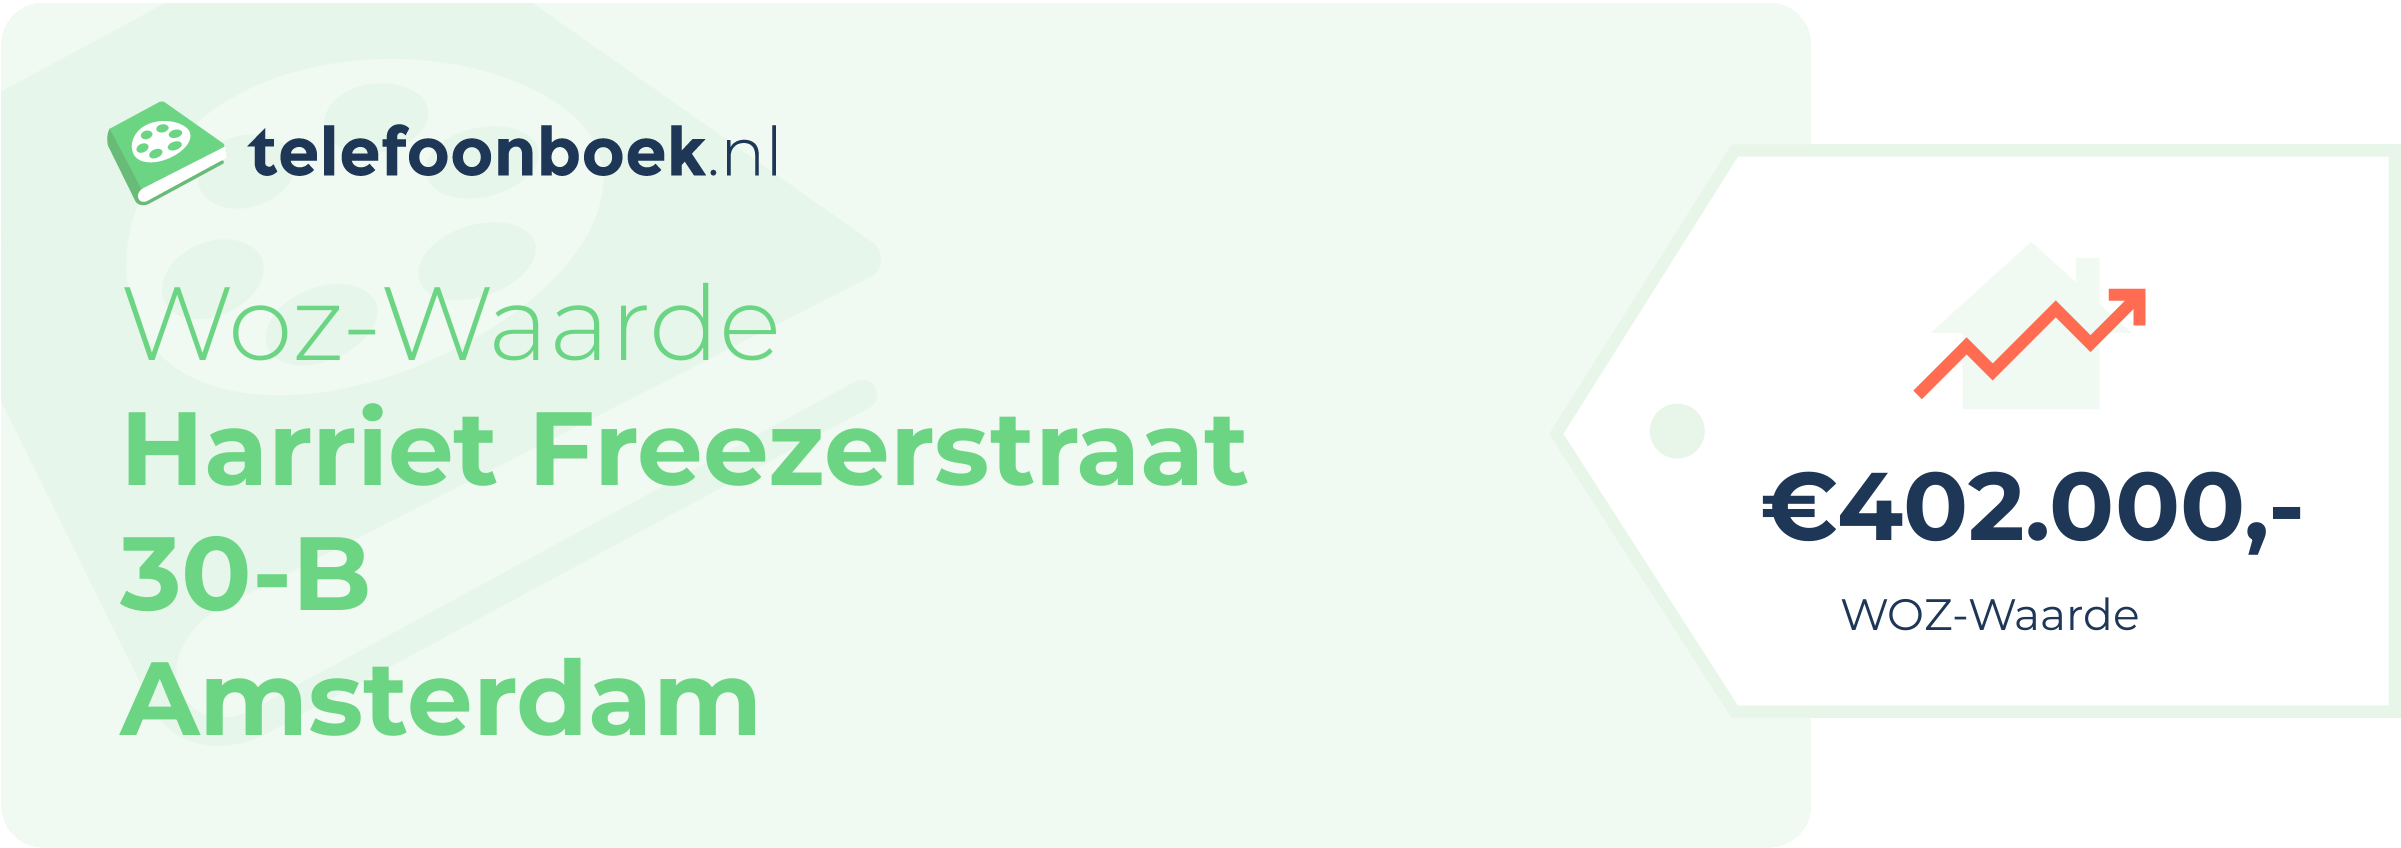 WOZ-waarde Harriet Freezerstraat 30-B Amsterdam